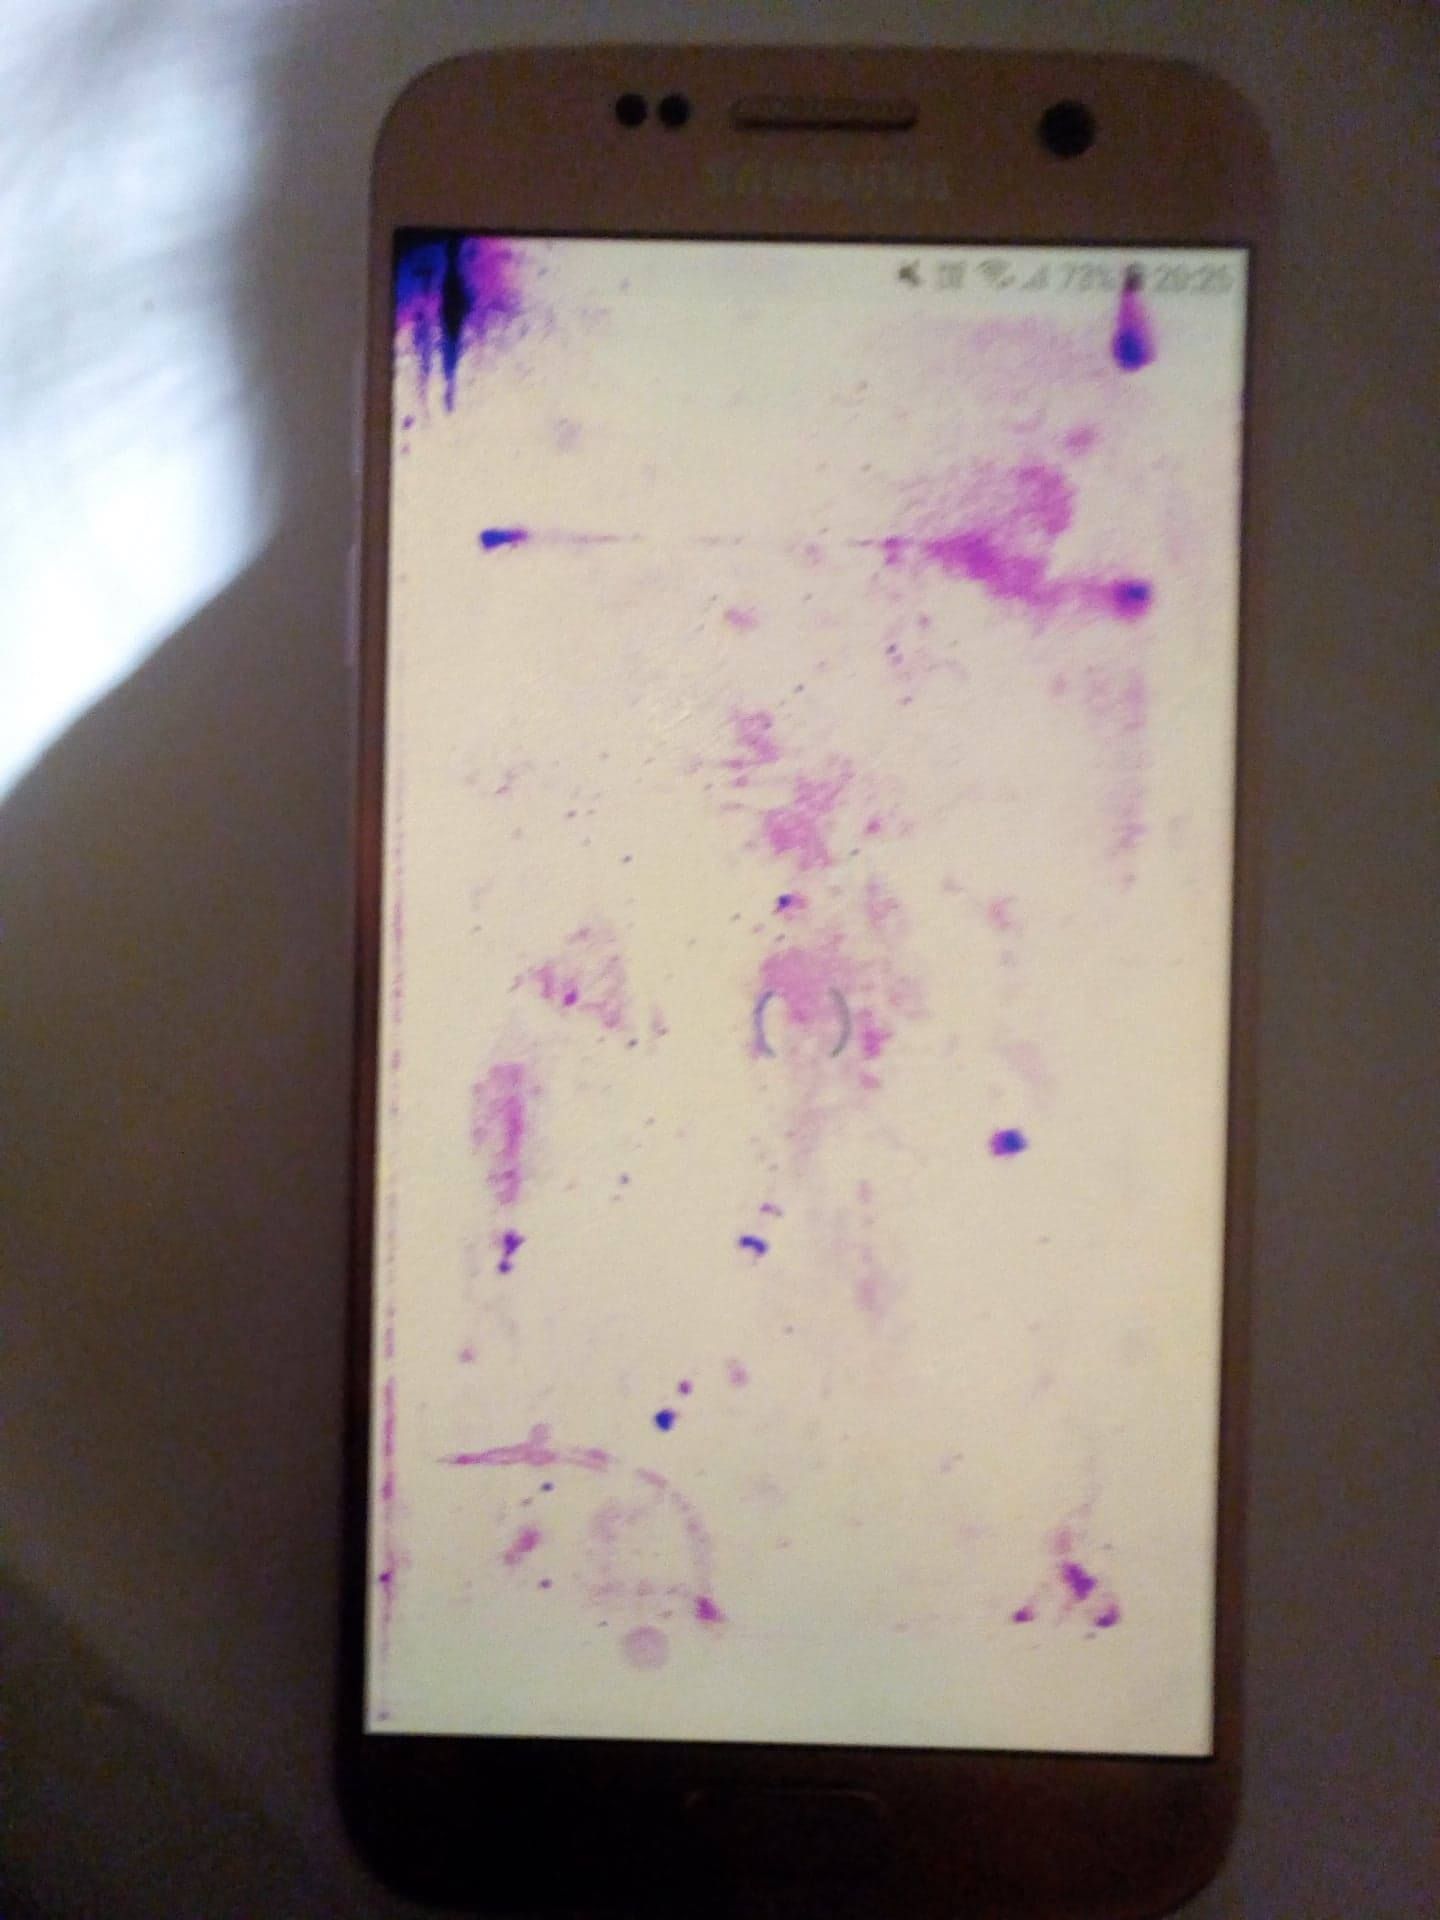 tâches violettes sur écran S7 - Samsung Community